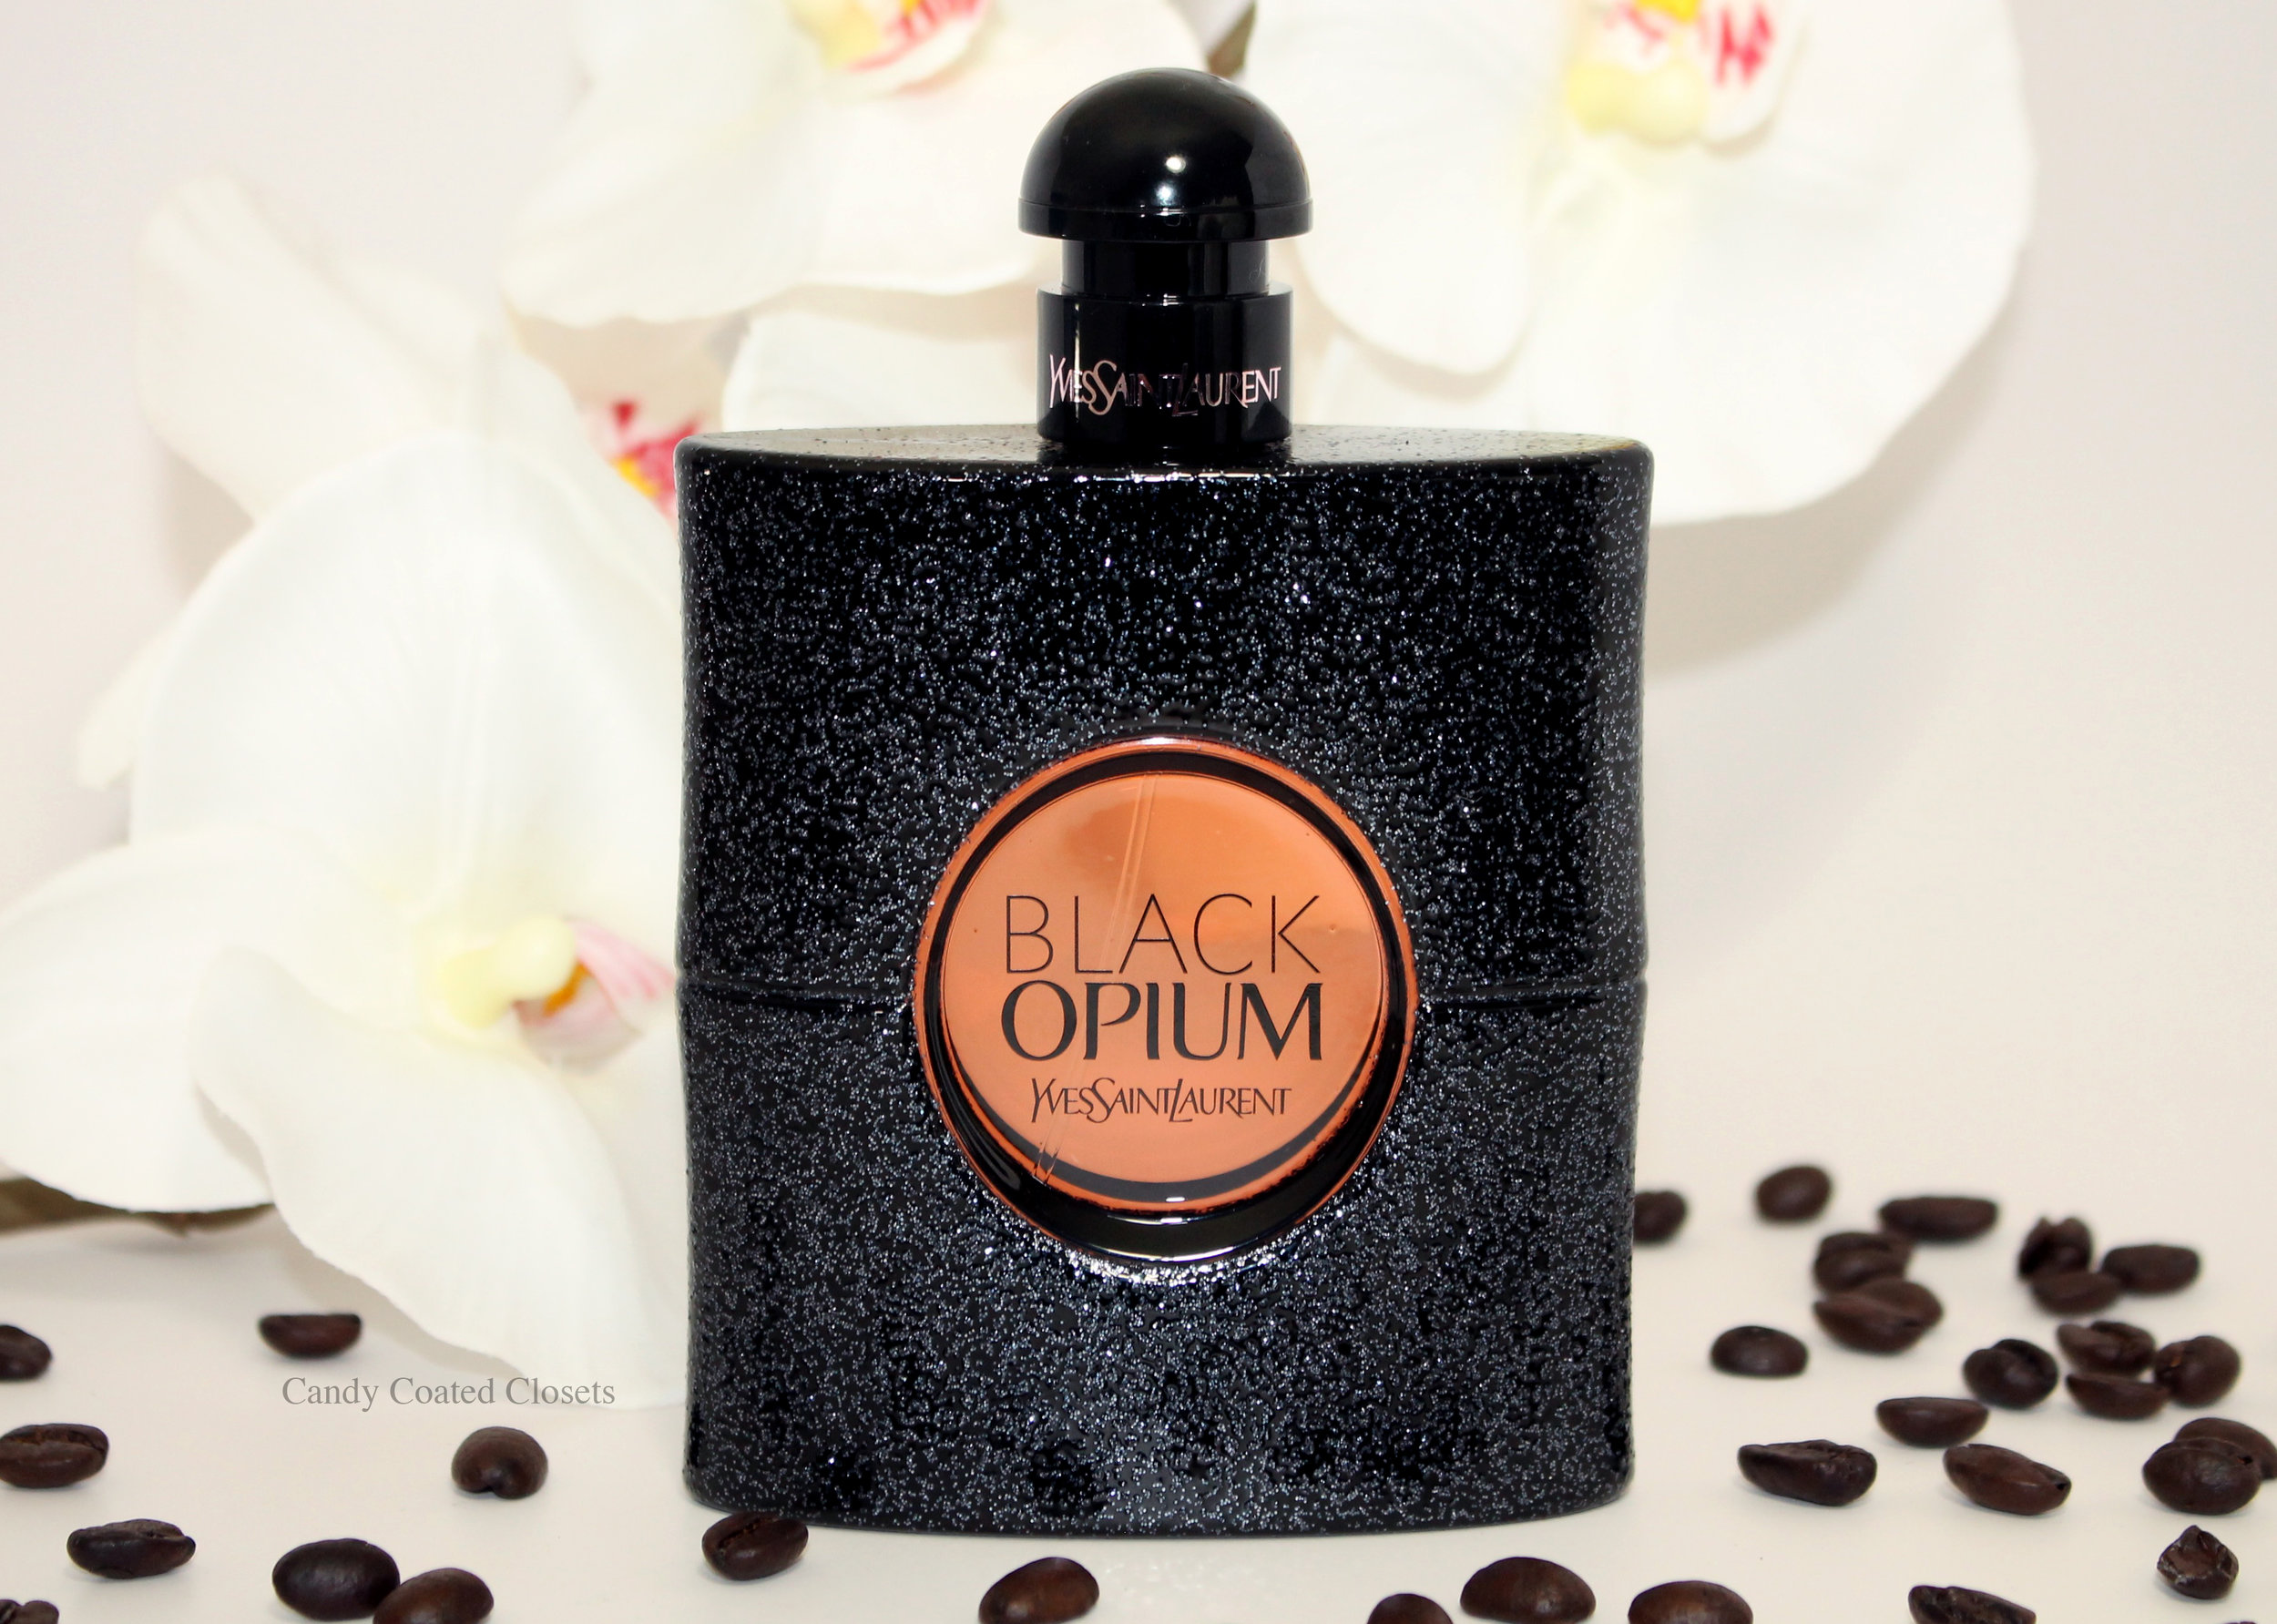 Yves Saint Laurent Black Opium Eau de Parfum Fragrance Review and